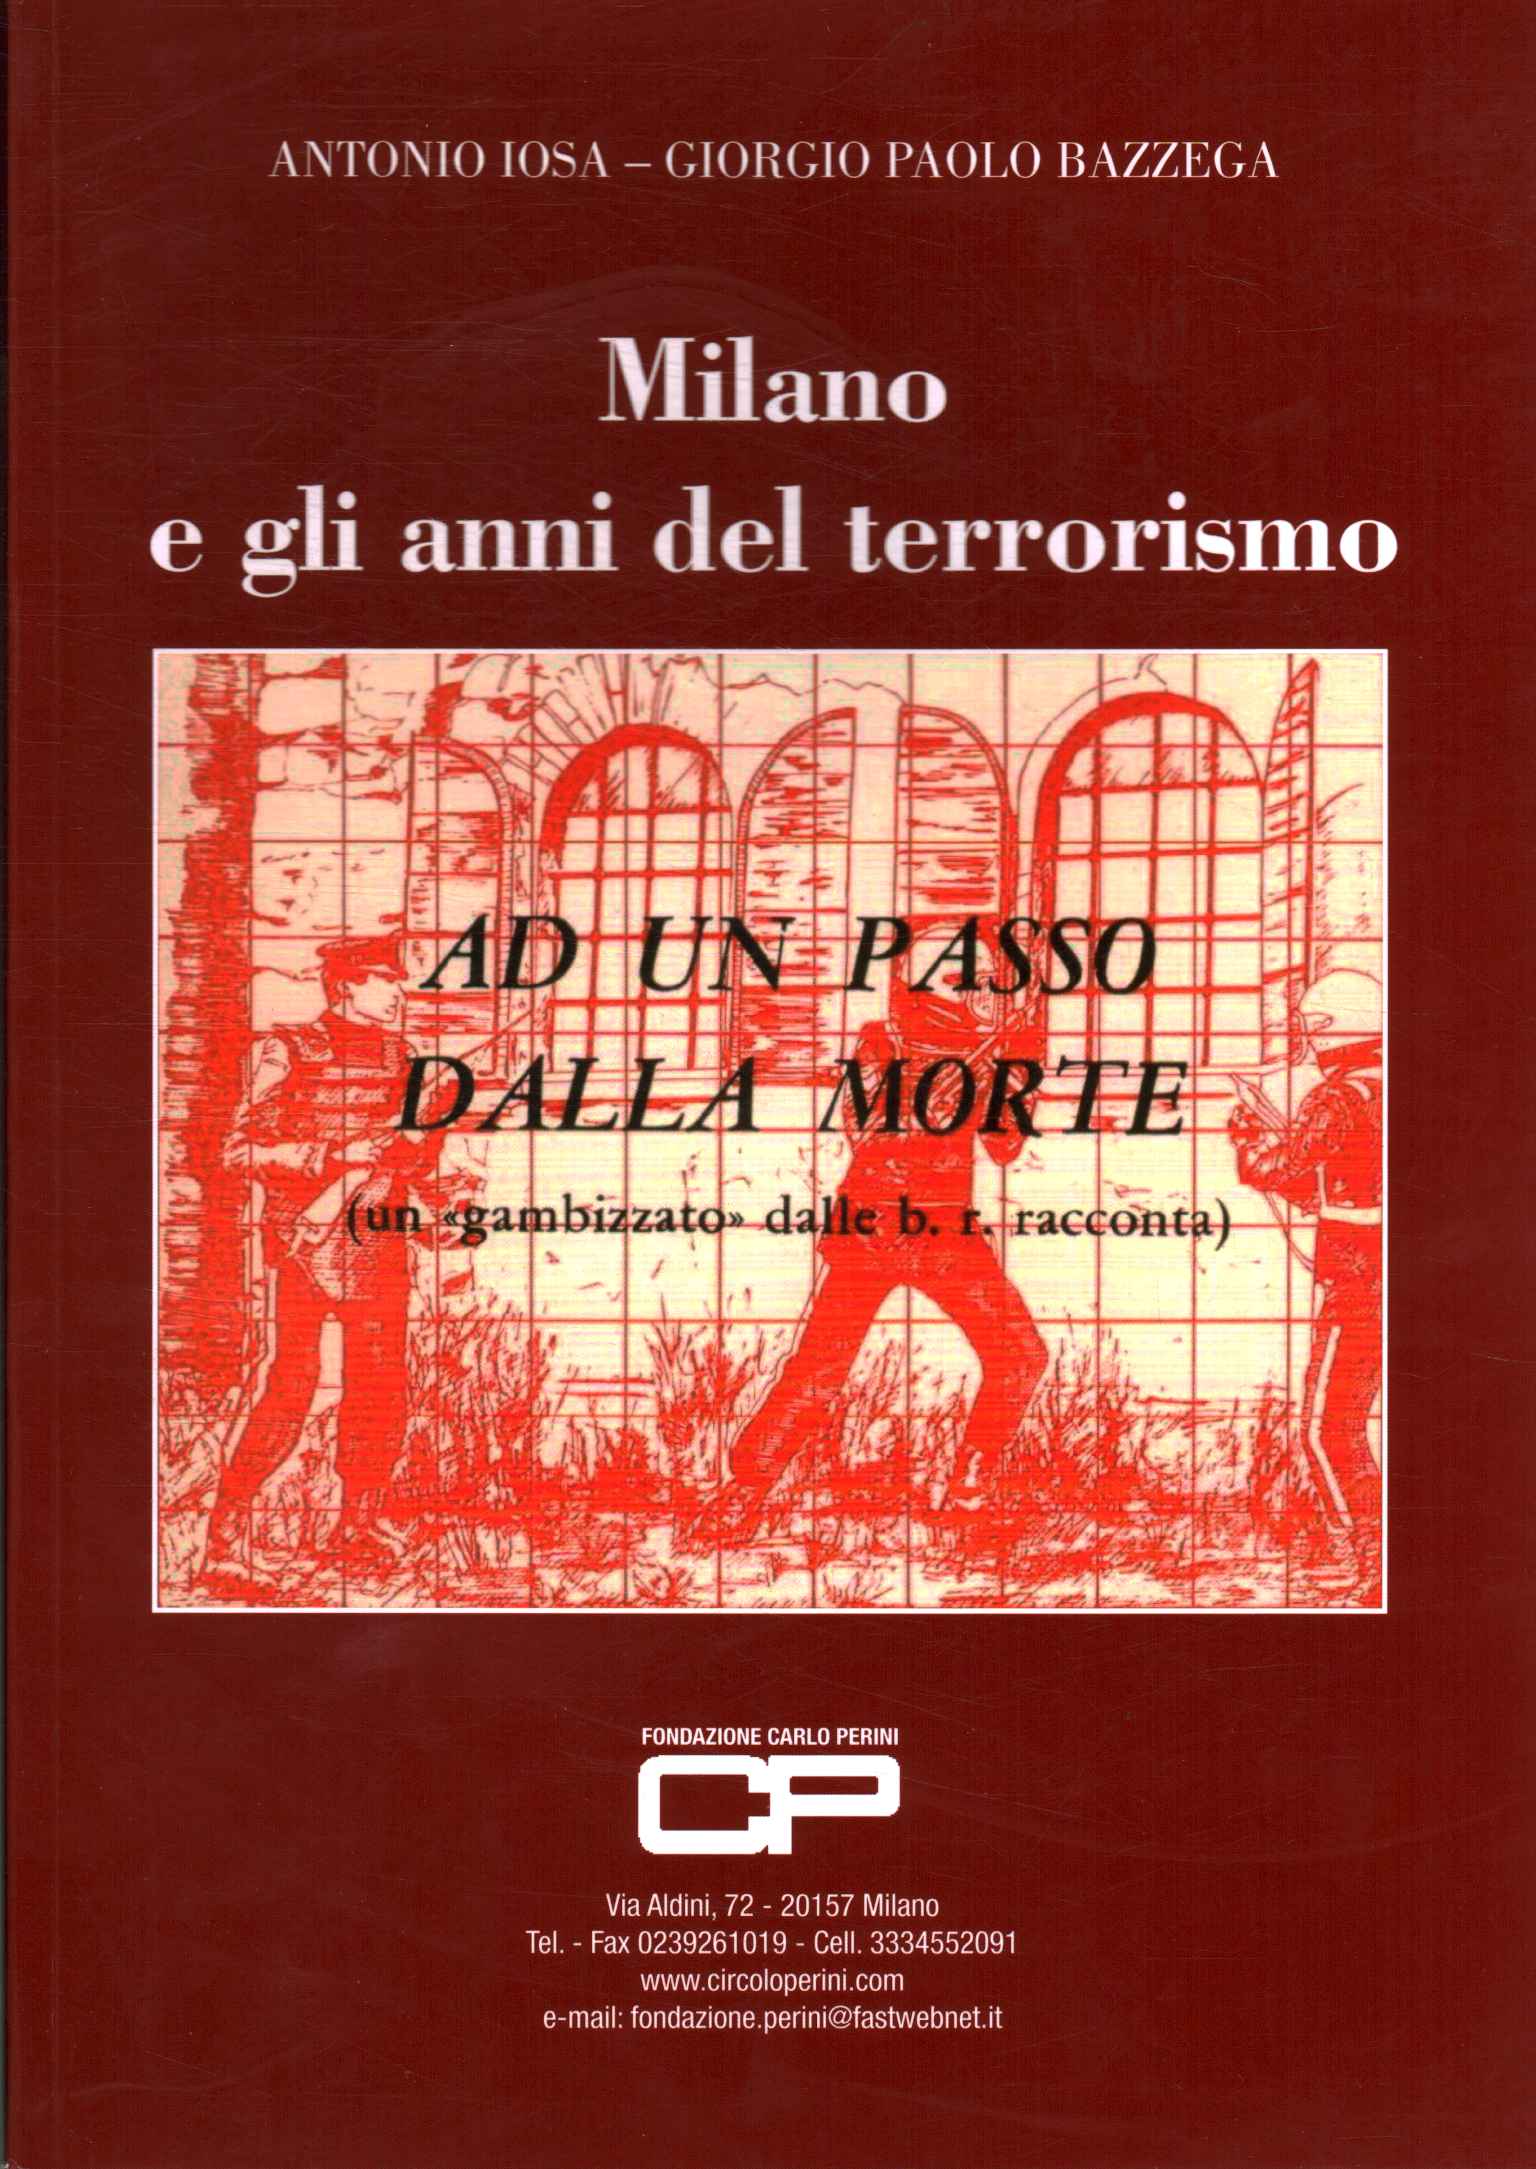 Mailand und die Jahre des Terrorismus,Mailand und die Jahre des Terrorismus